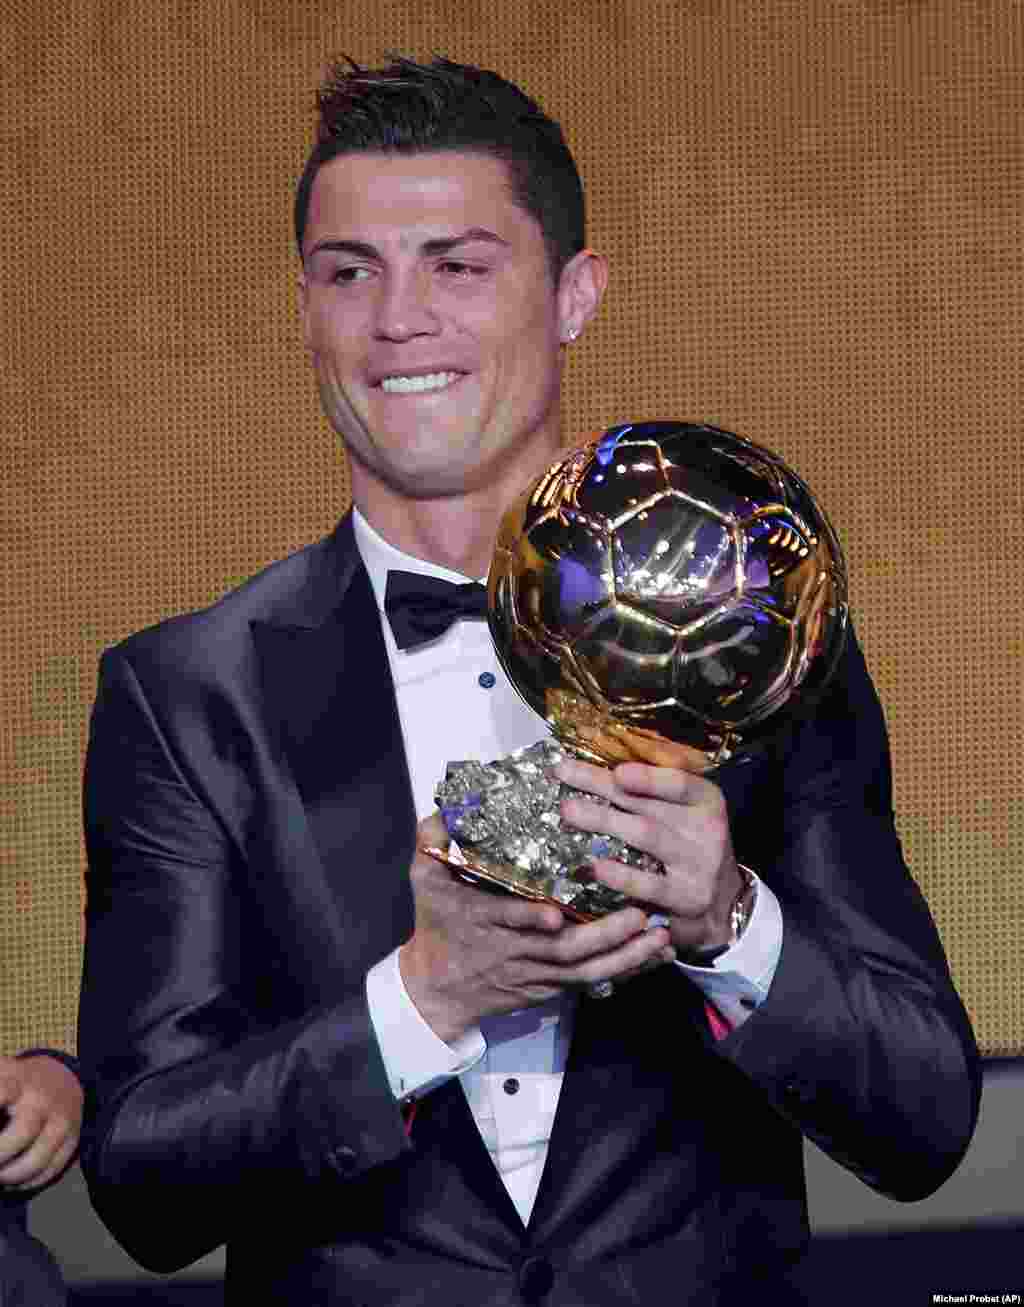 Cristiano Ronaldo, jogador português do Real Madrid, vencedor da Bola de Ouro 2013. Gala FIFA Bola de Ouro 2013 em Zurique, Suíça. Jan. 13, 2014